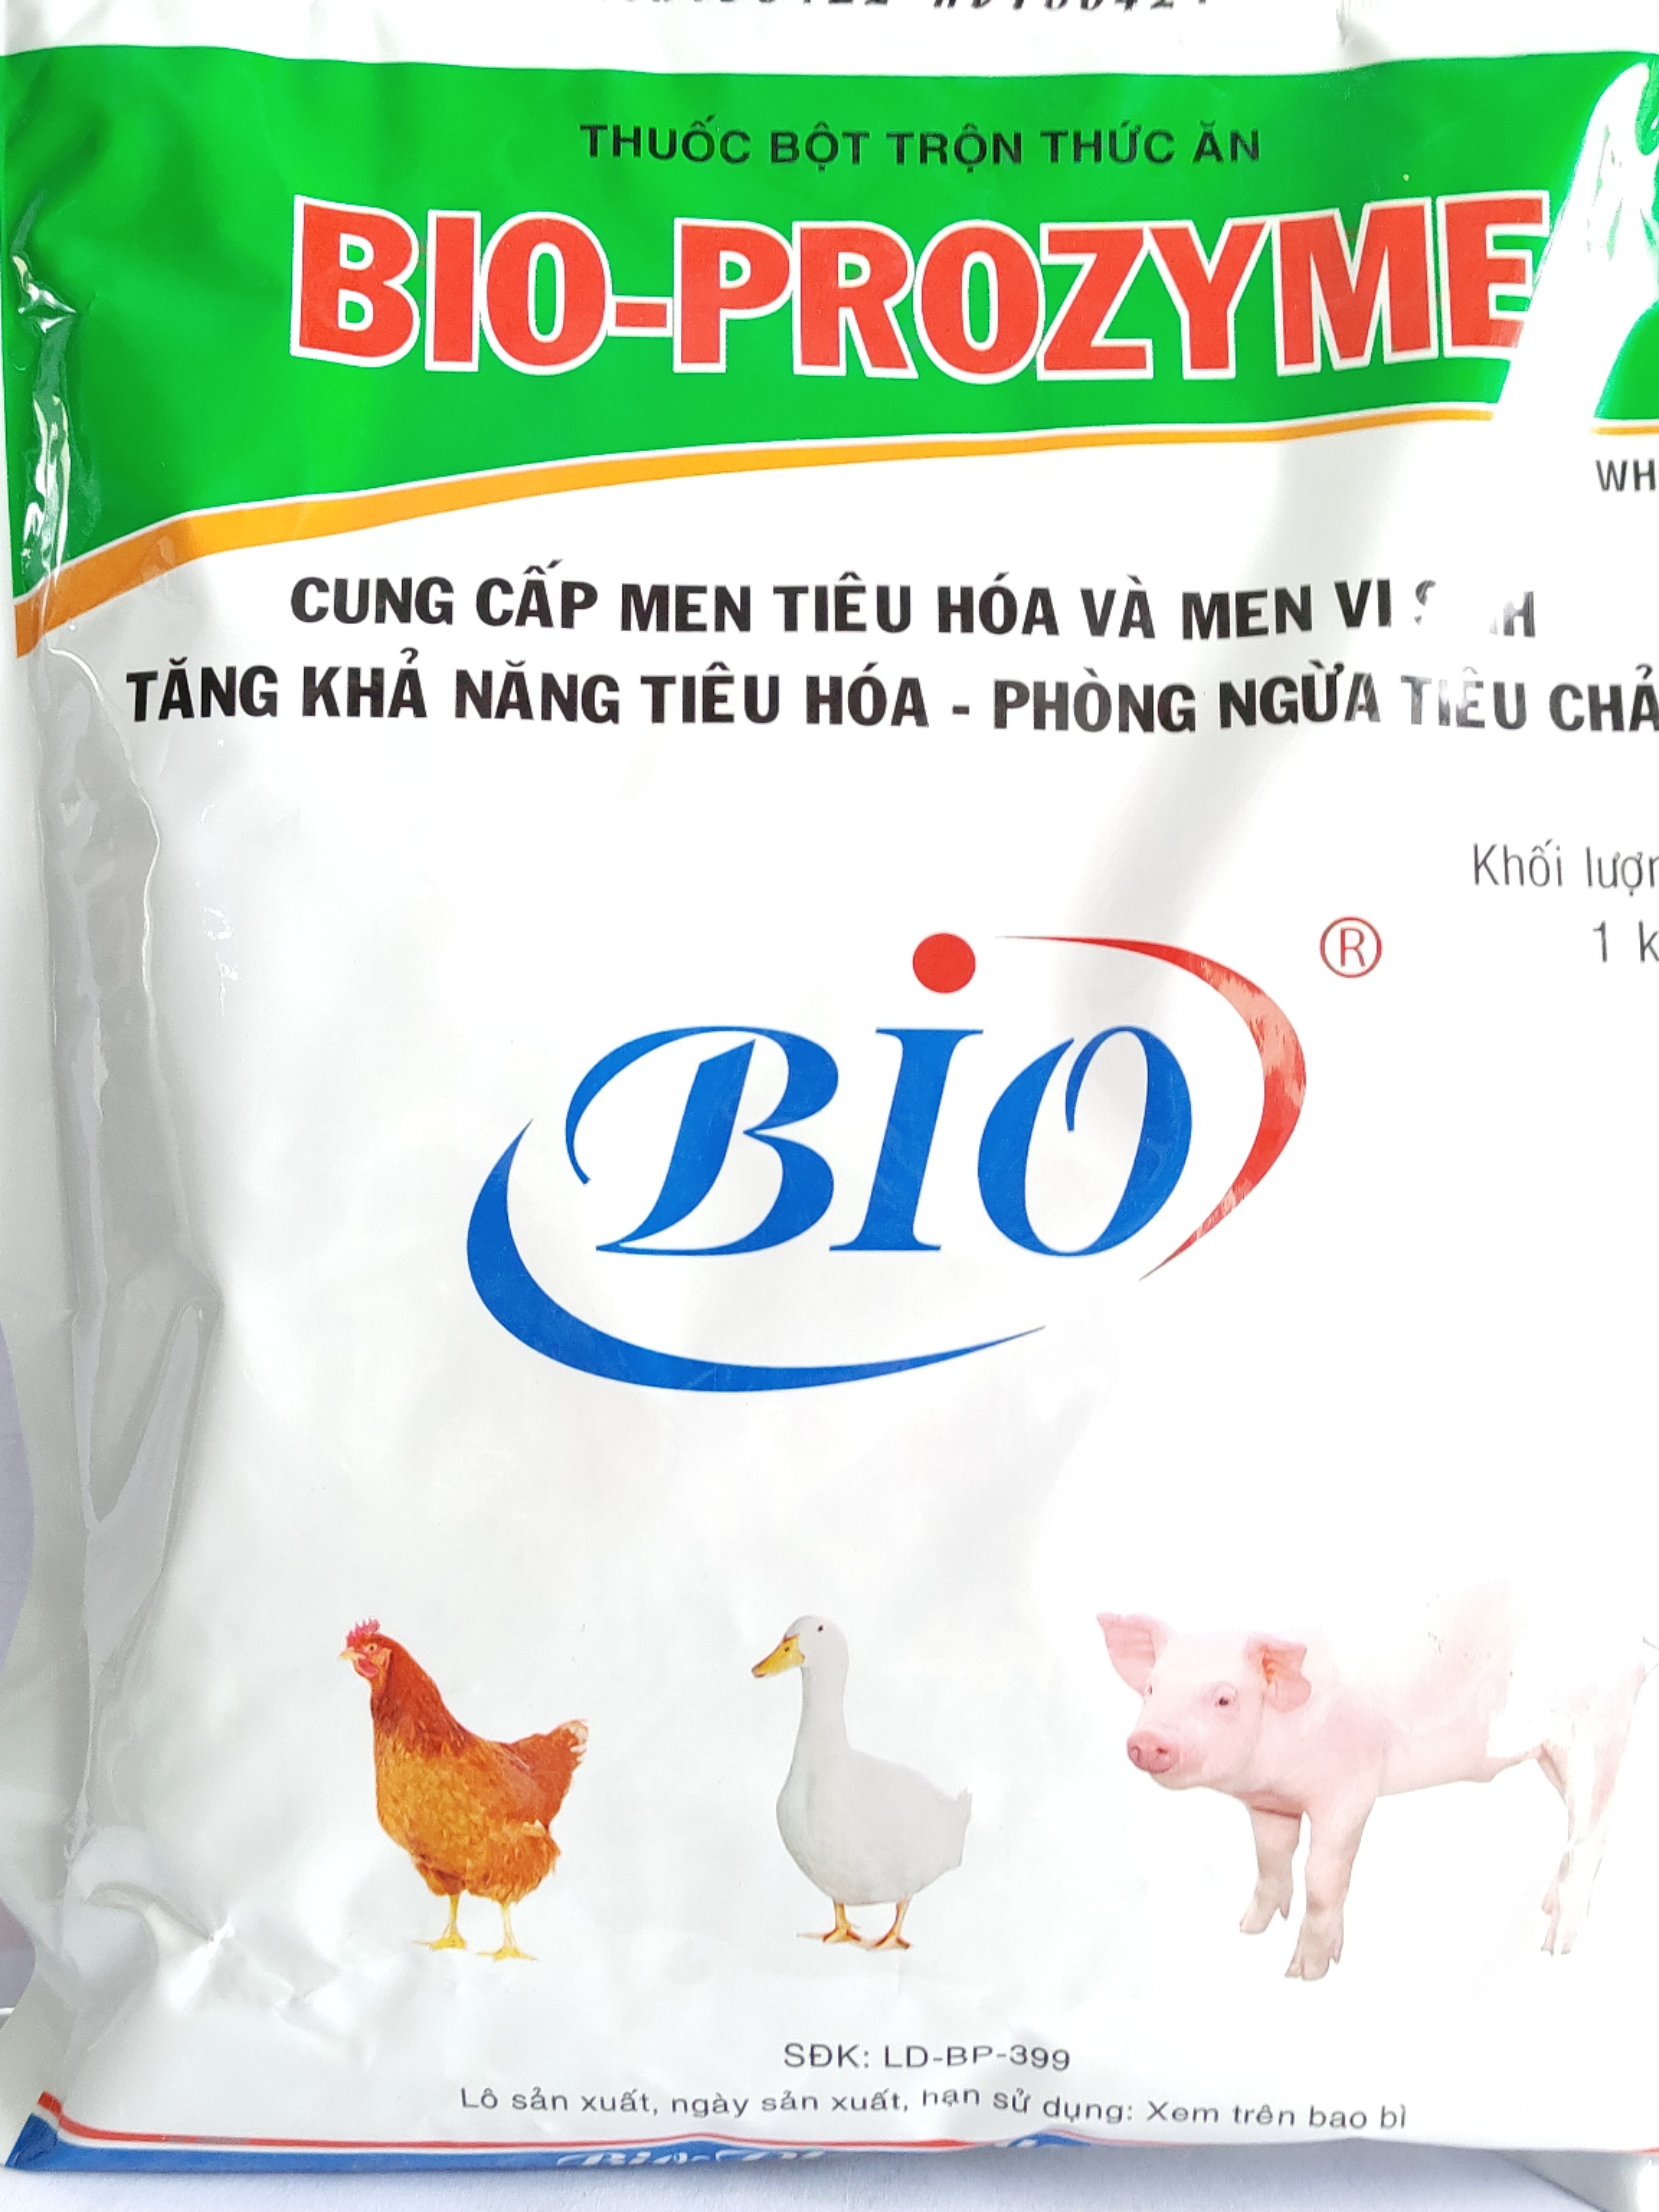 Thuốc bột trộn thức ăn BIO-PROZYME Tăng khả năng tiêu hoá,ngừa tiêu chảy